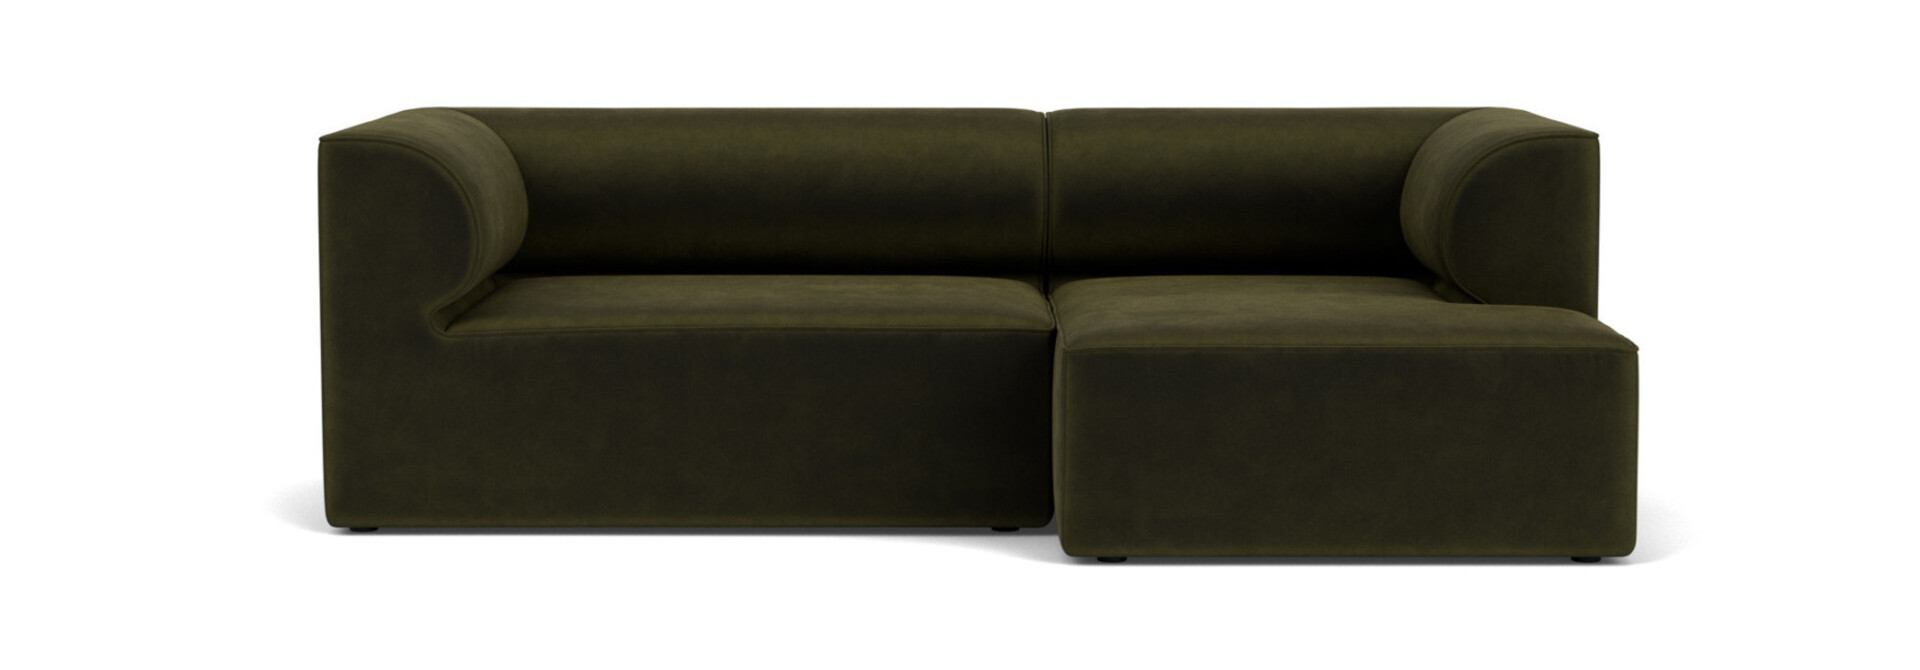 Eave Modular Sofa 3 Seater Configuration 5-6